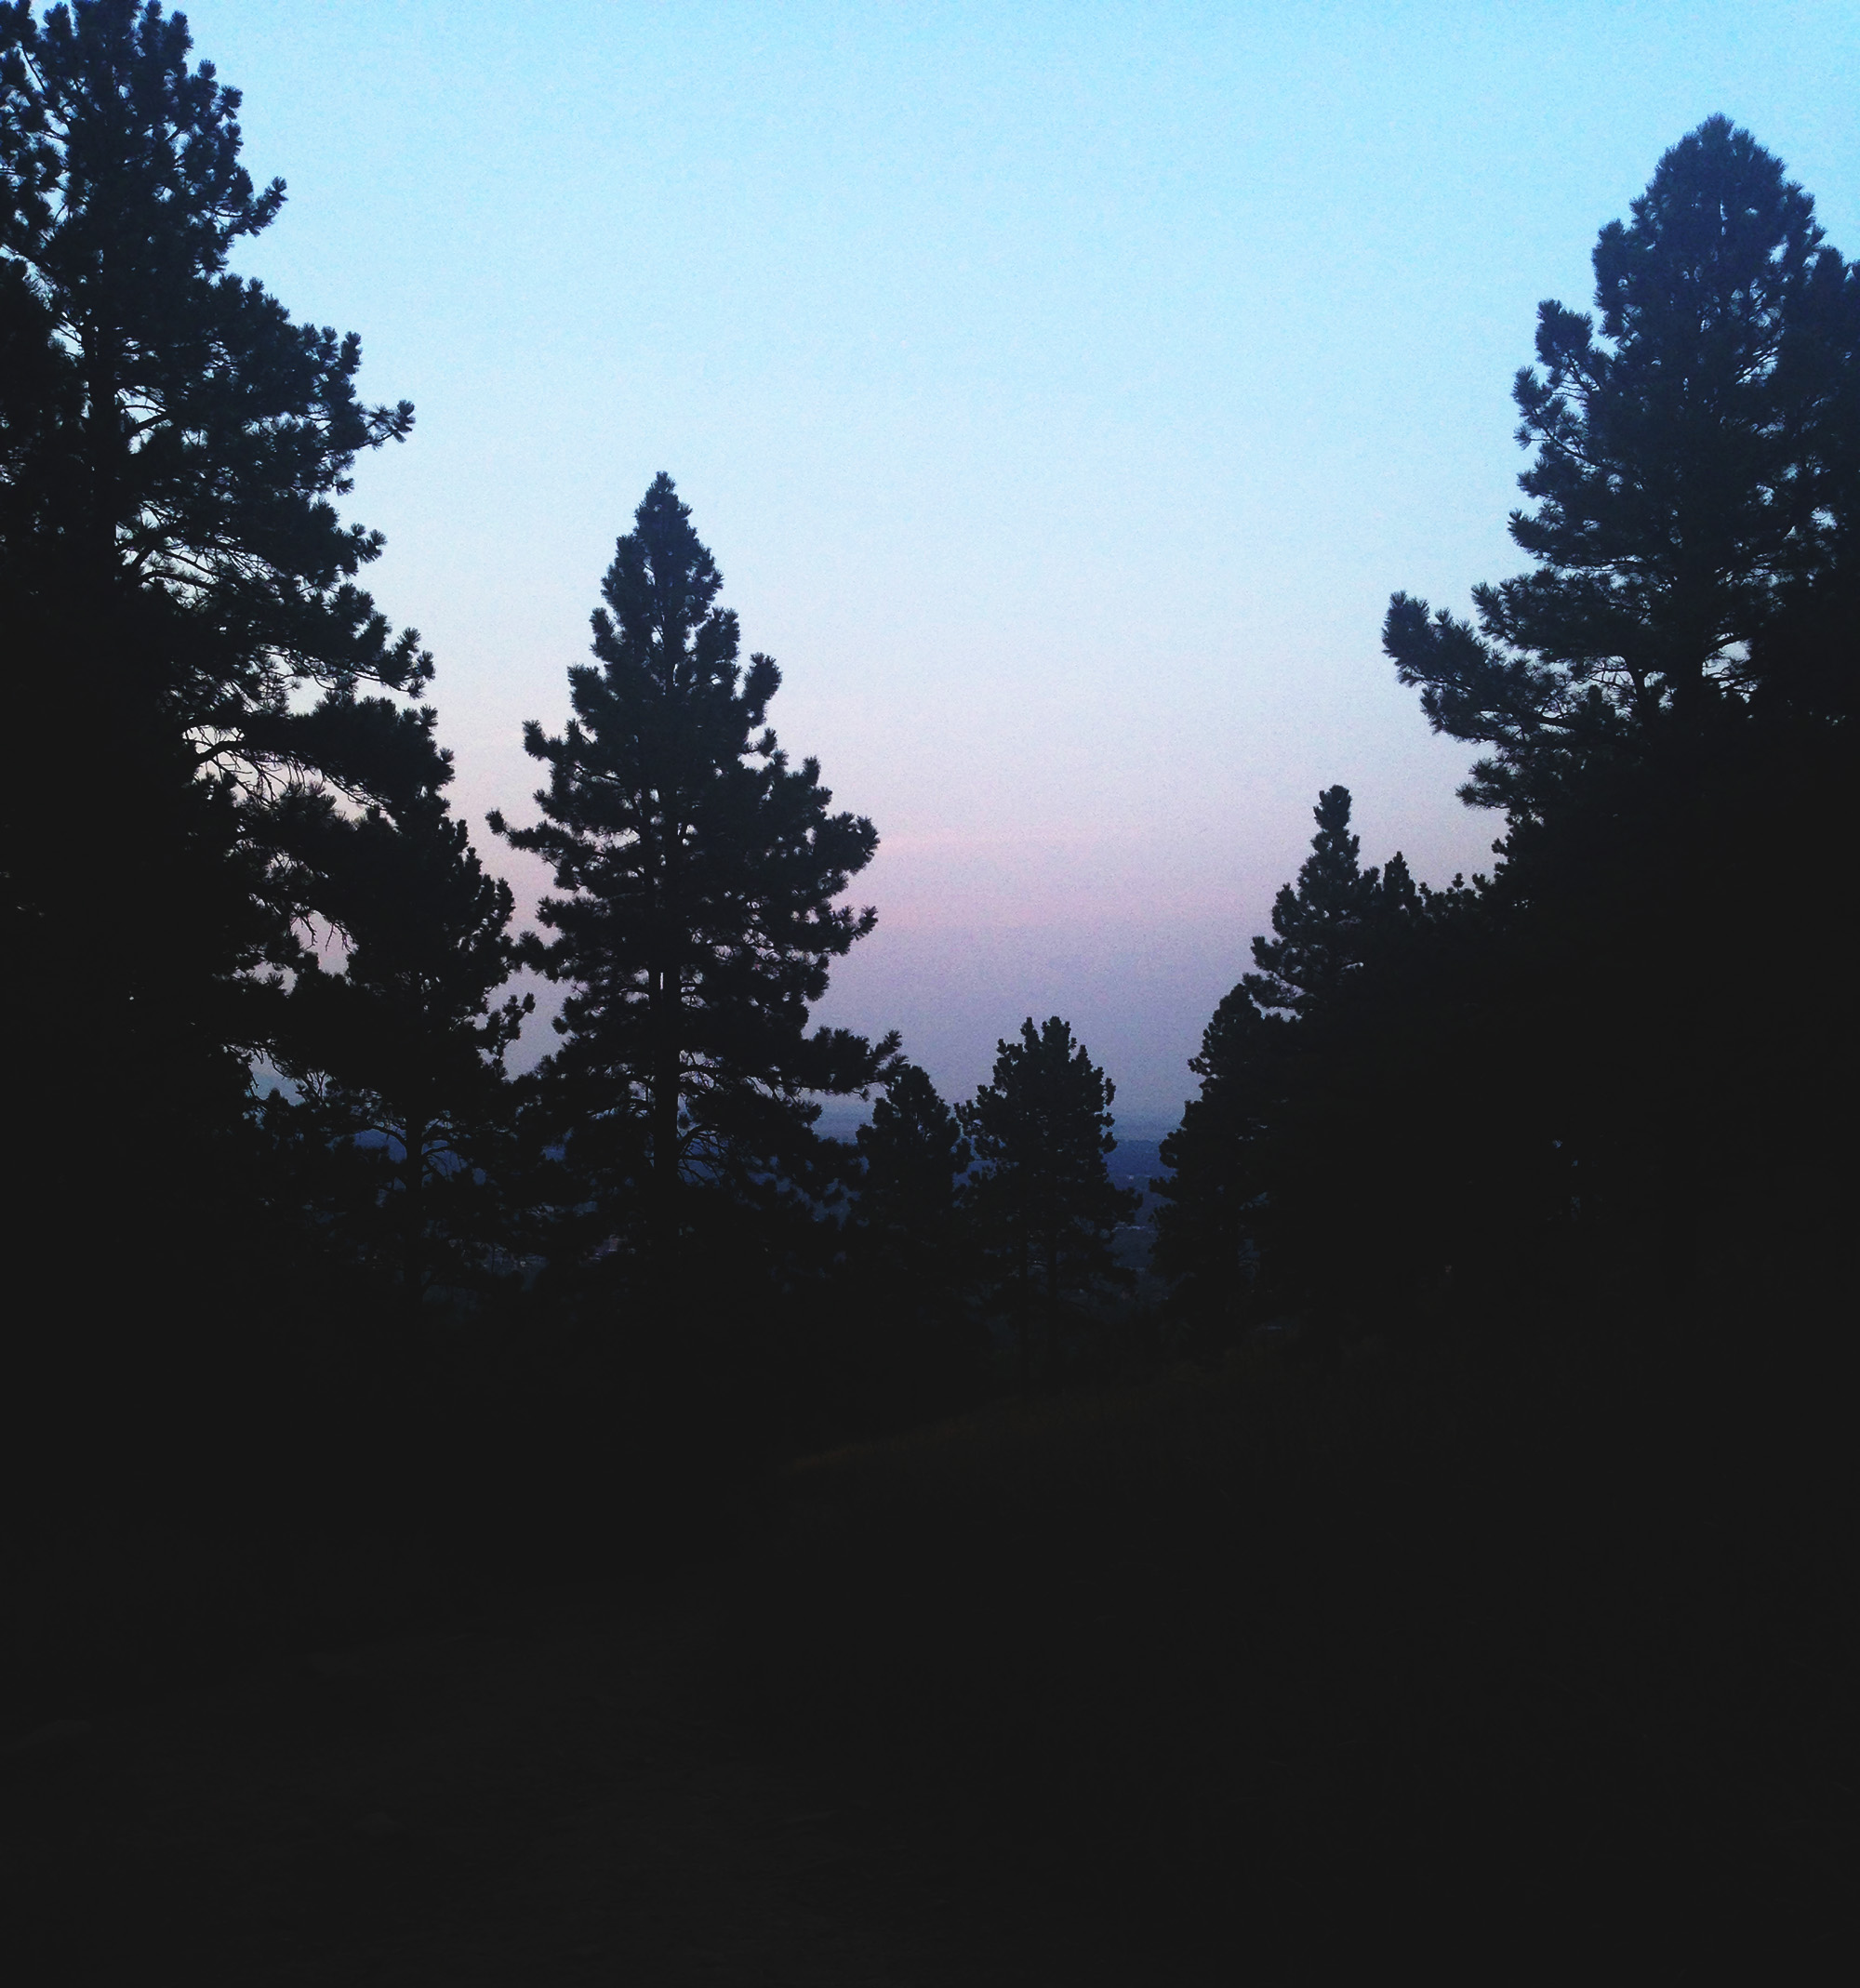 Sunset through the trees, Chautauqua, Boulder Colorado